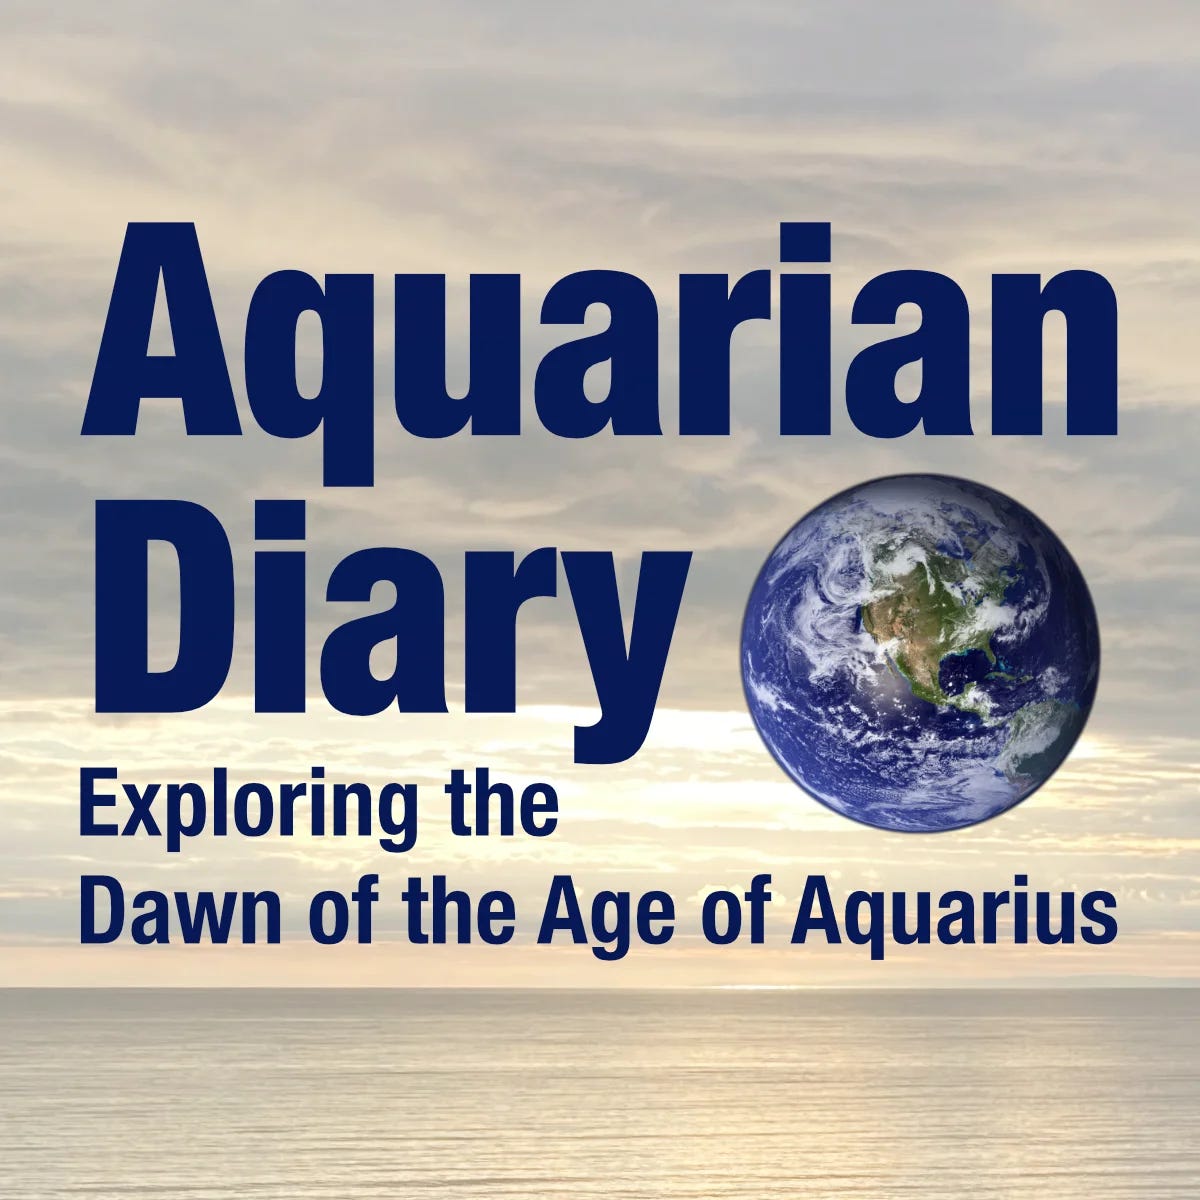 Aquarian Diary